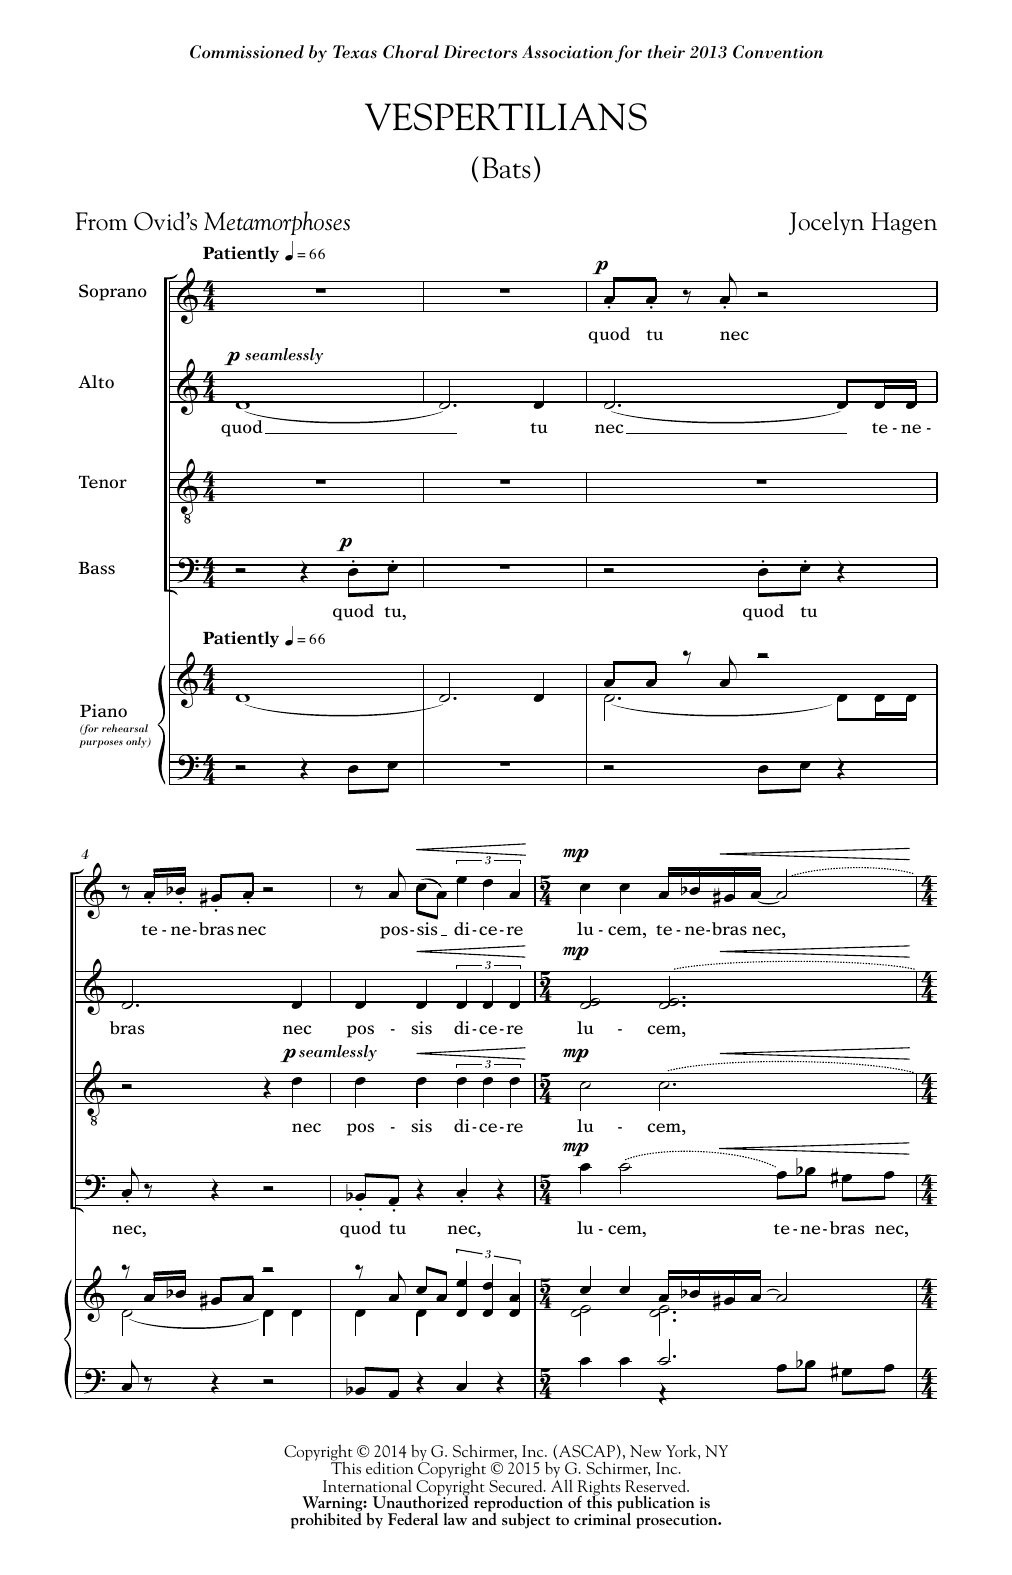 Jocelyn Hagen Vespertilians Sheet Music Notes & Chords for SATB - Download or Print PDF